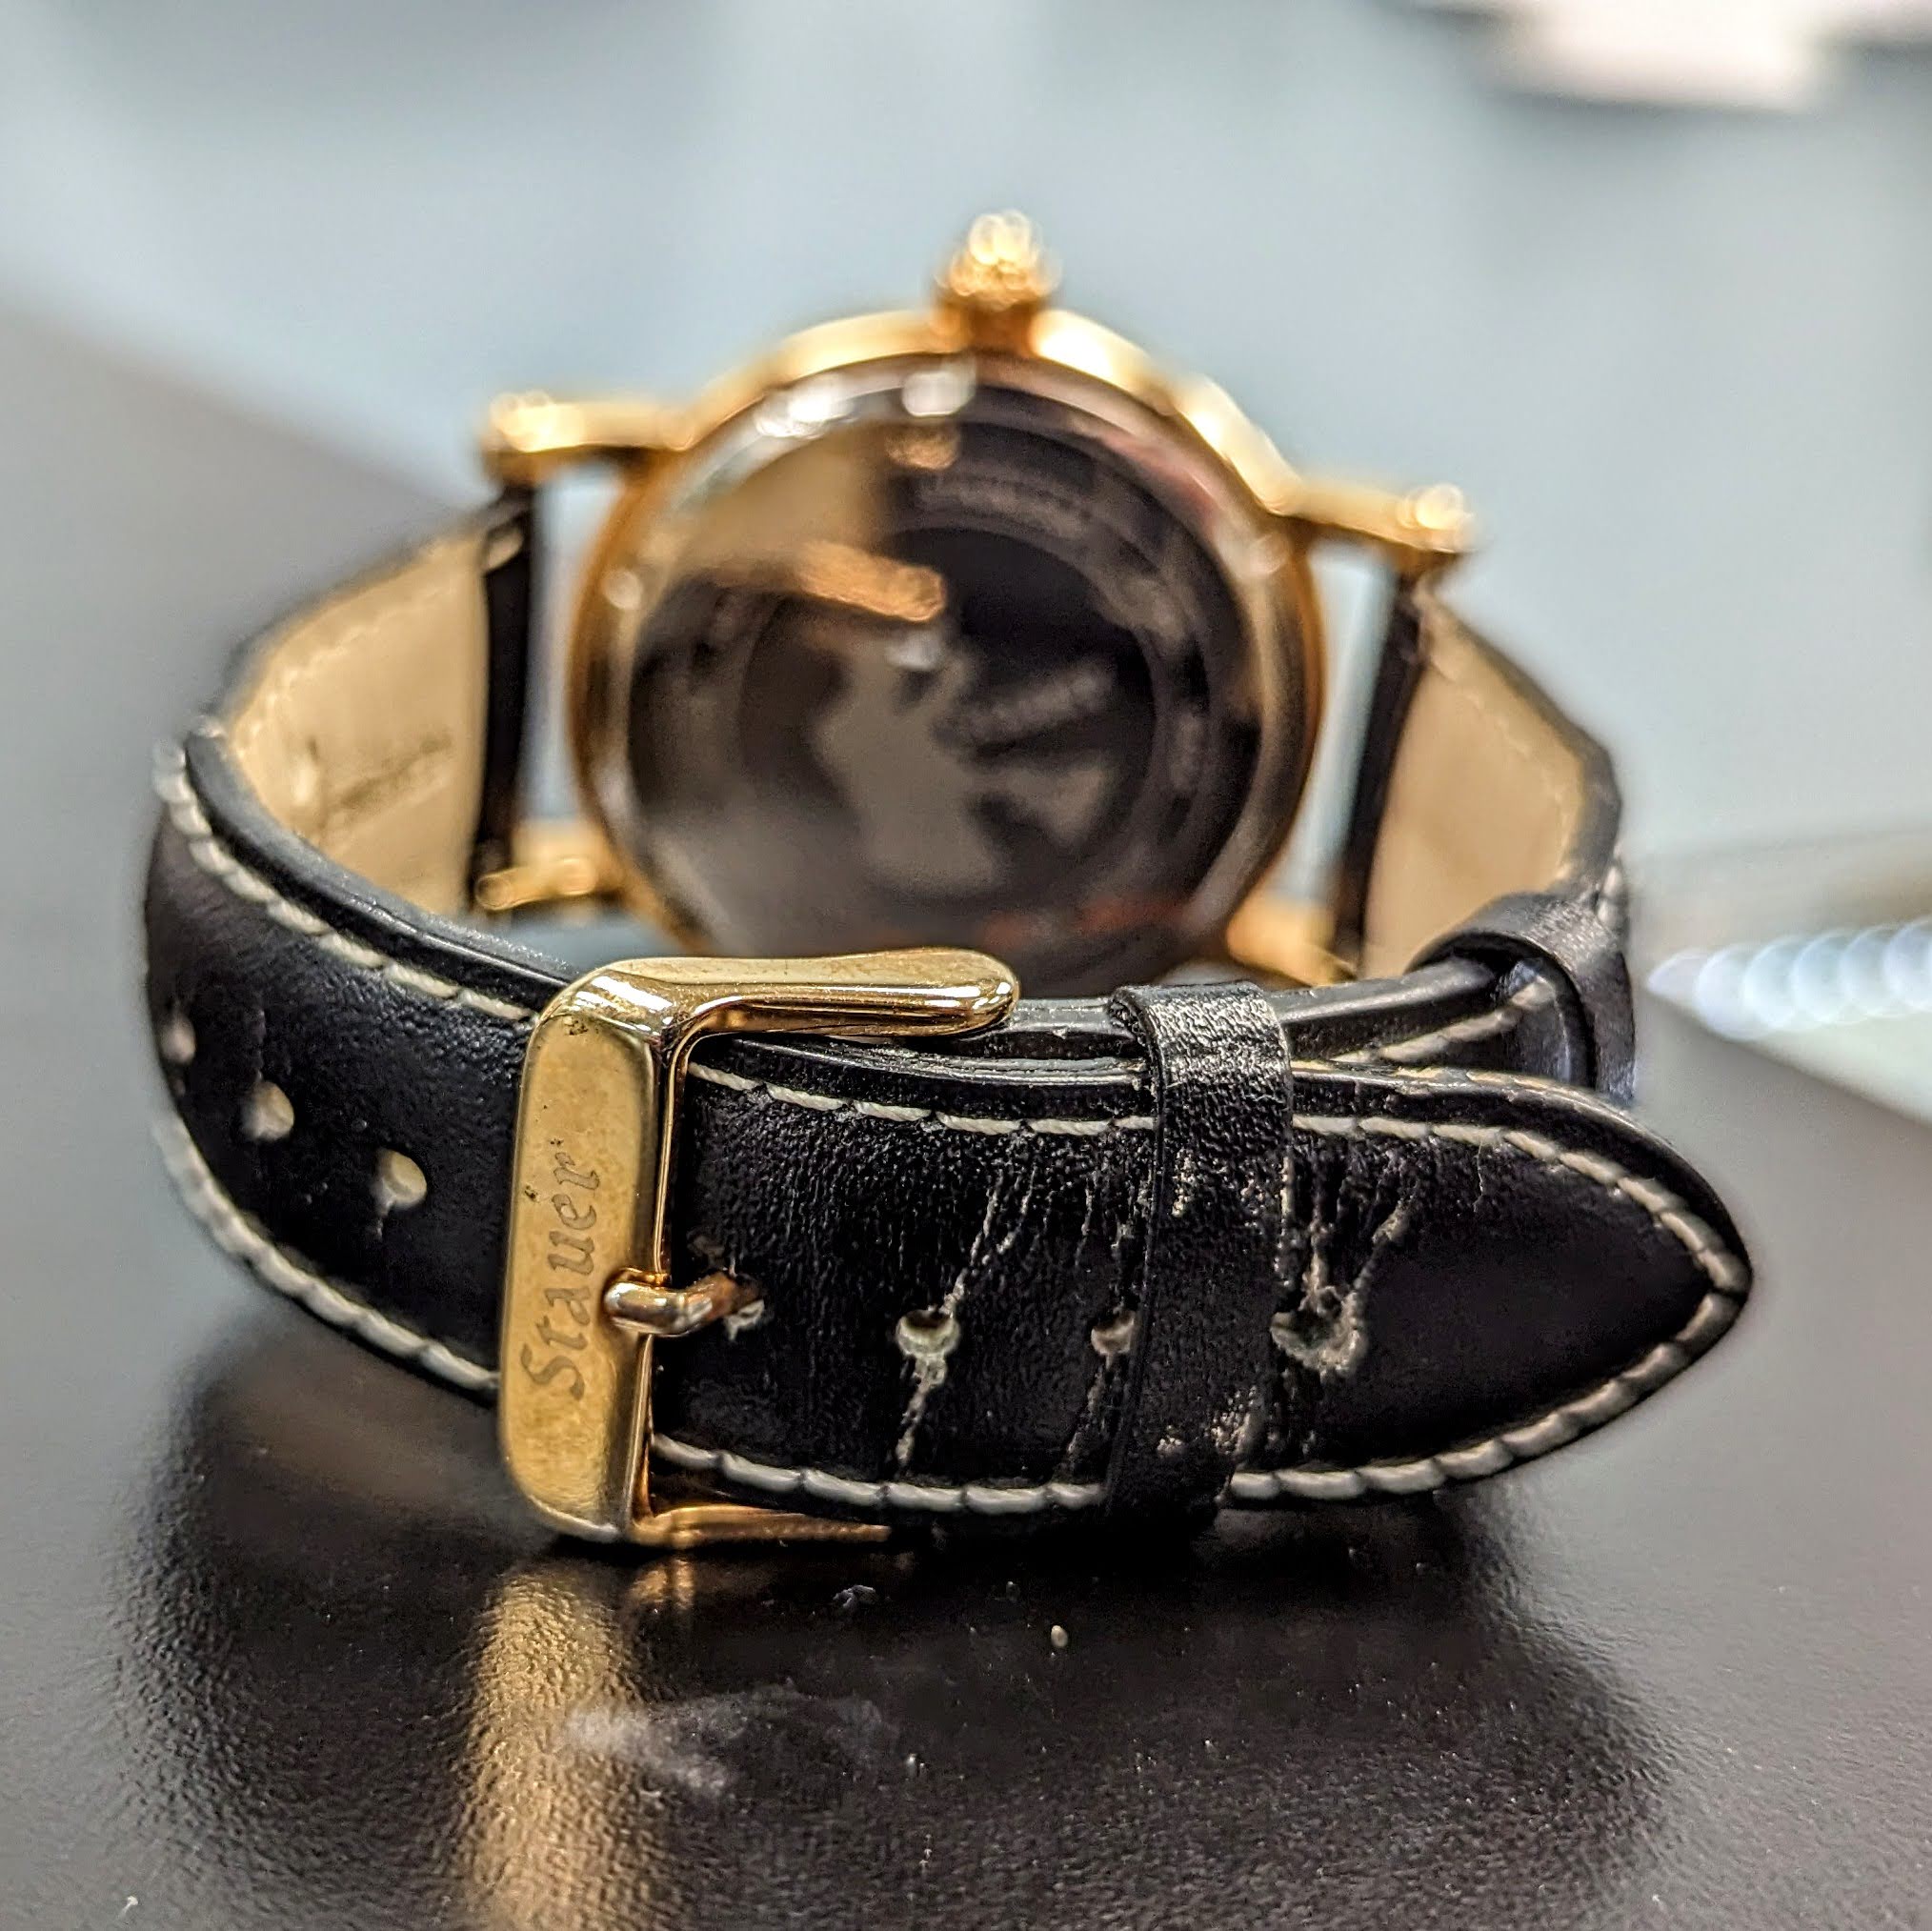 STAUER Buttonwood 42mm Quartz Watch Ref. 22671 3 ATM Waterresistant Wristwatch